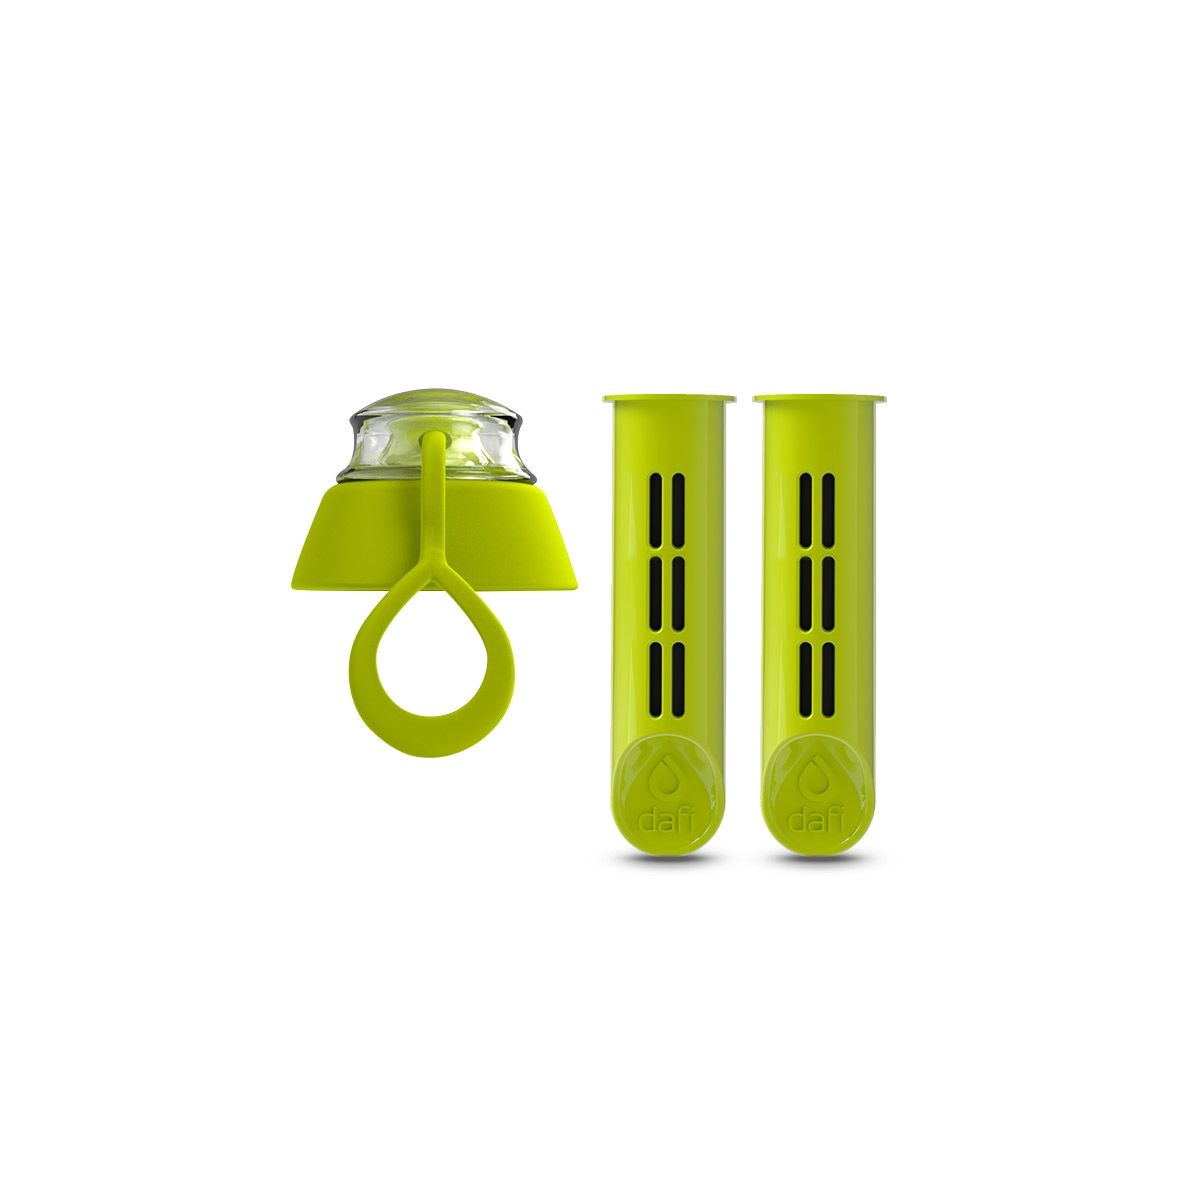 Náhradní filtr (2 ks) + víčko do filtrační láhve Dafi SOFT (zelená)